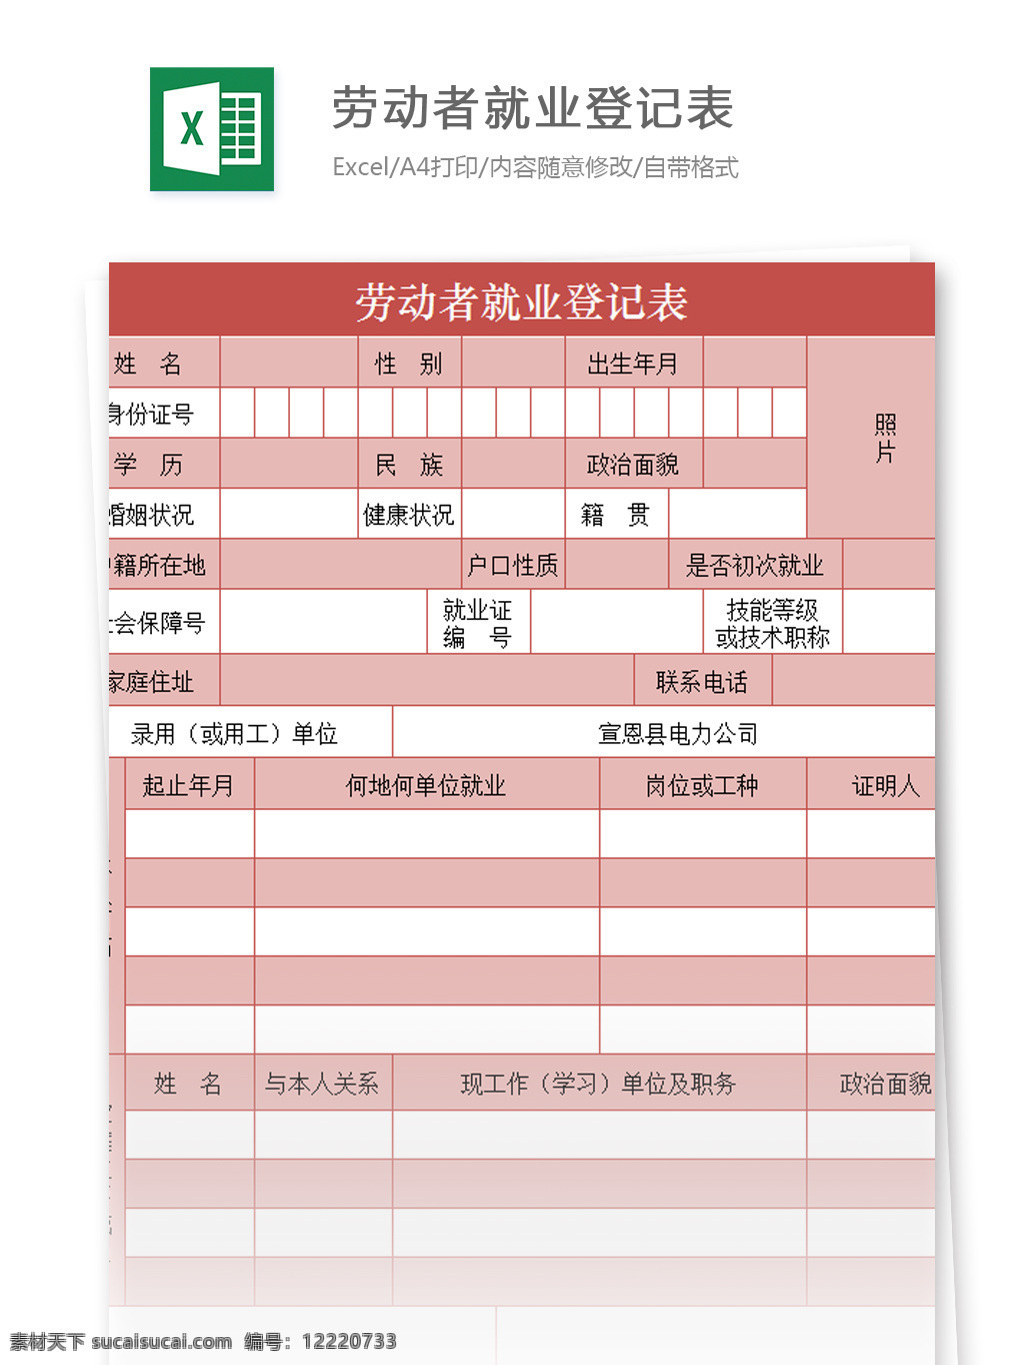 劳动者 就业 登记表 excel 模板 表格模板 图表 表格设计 表格